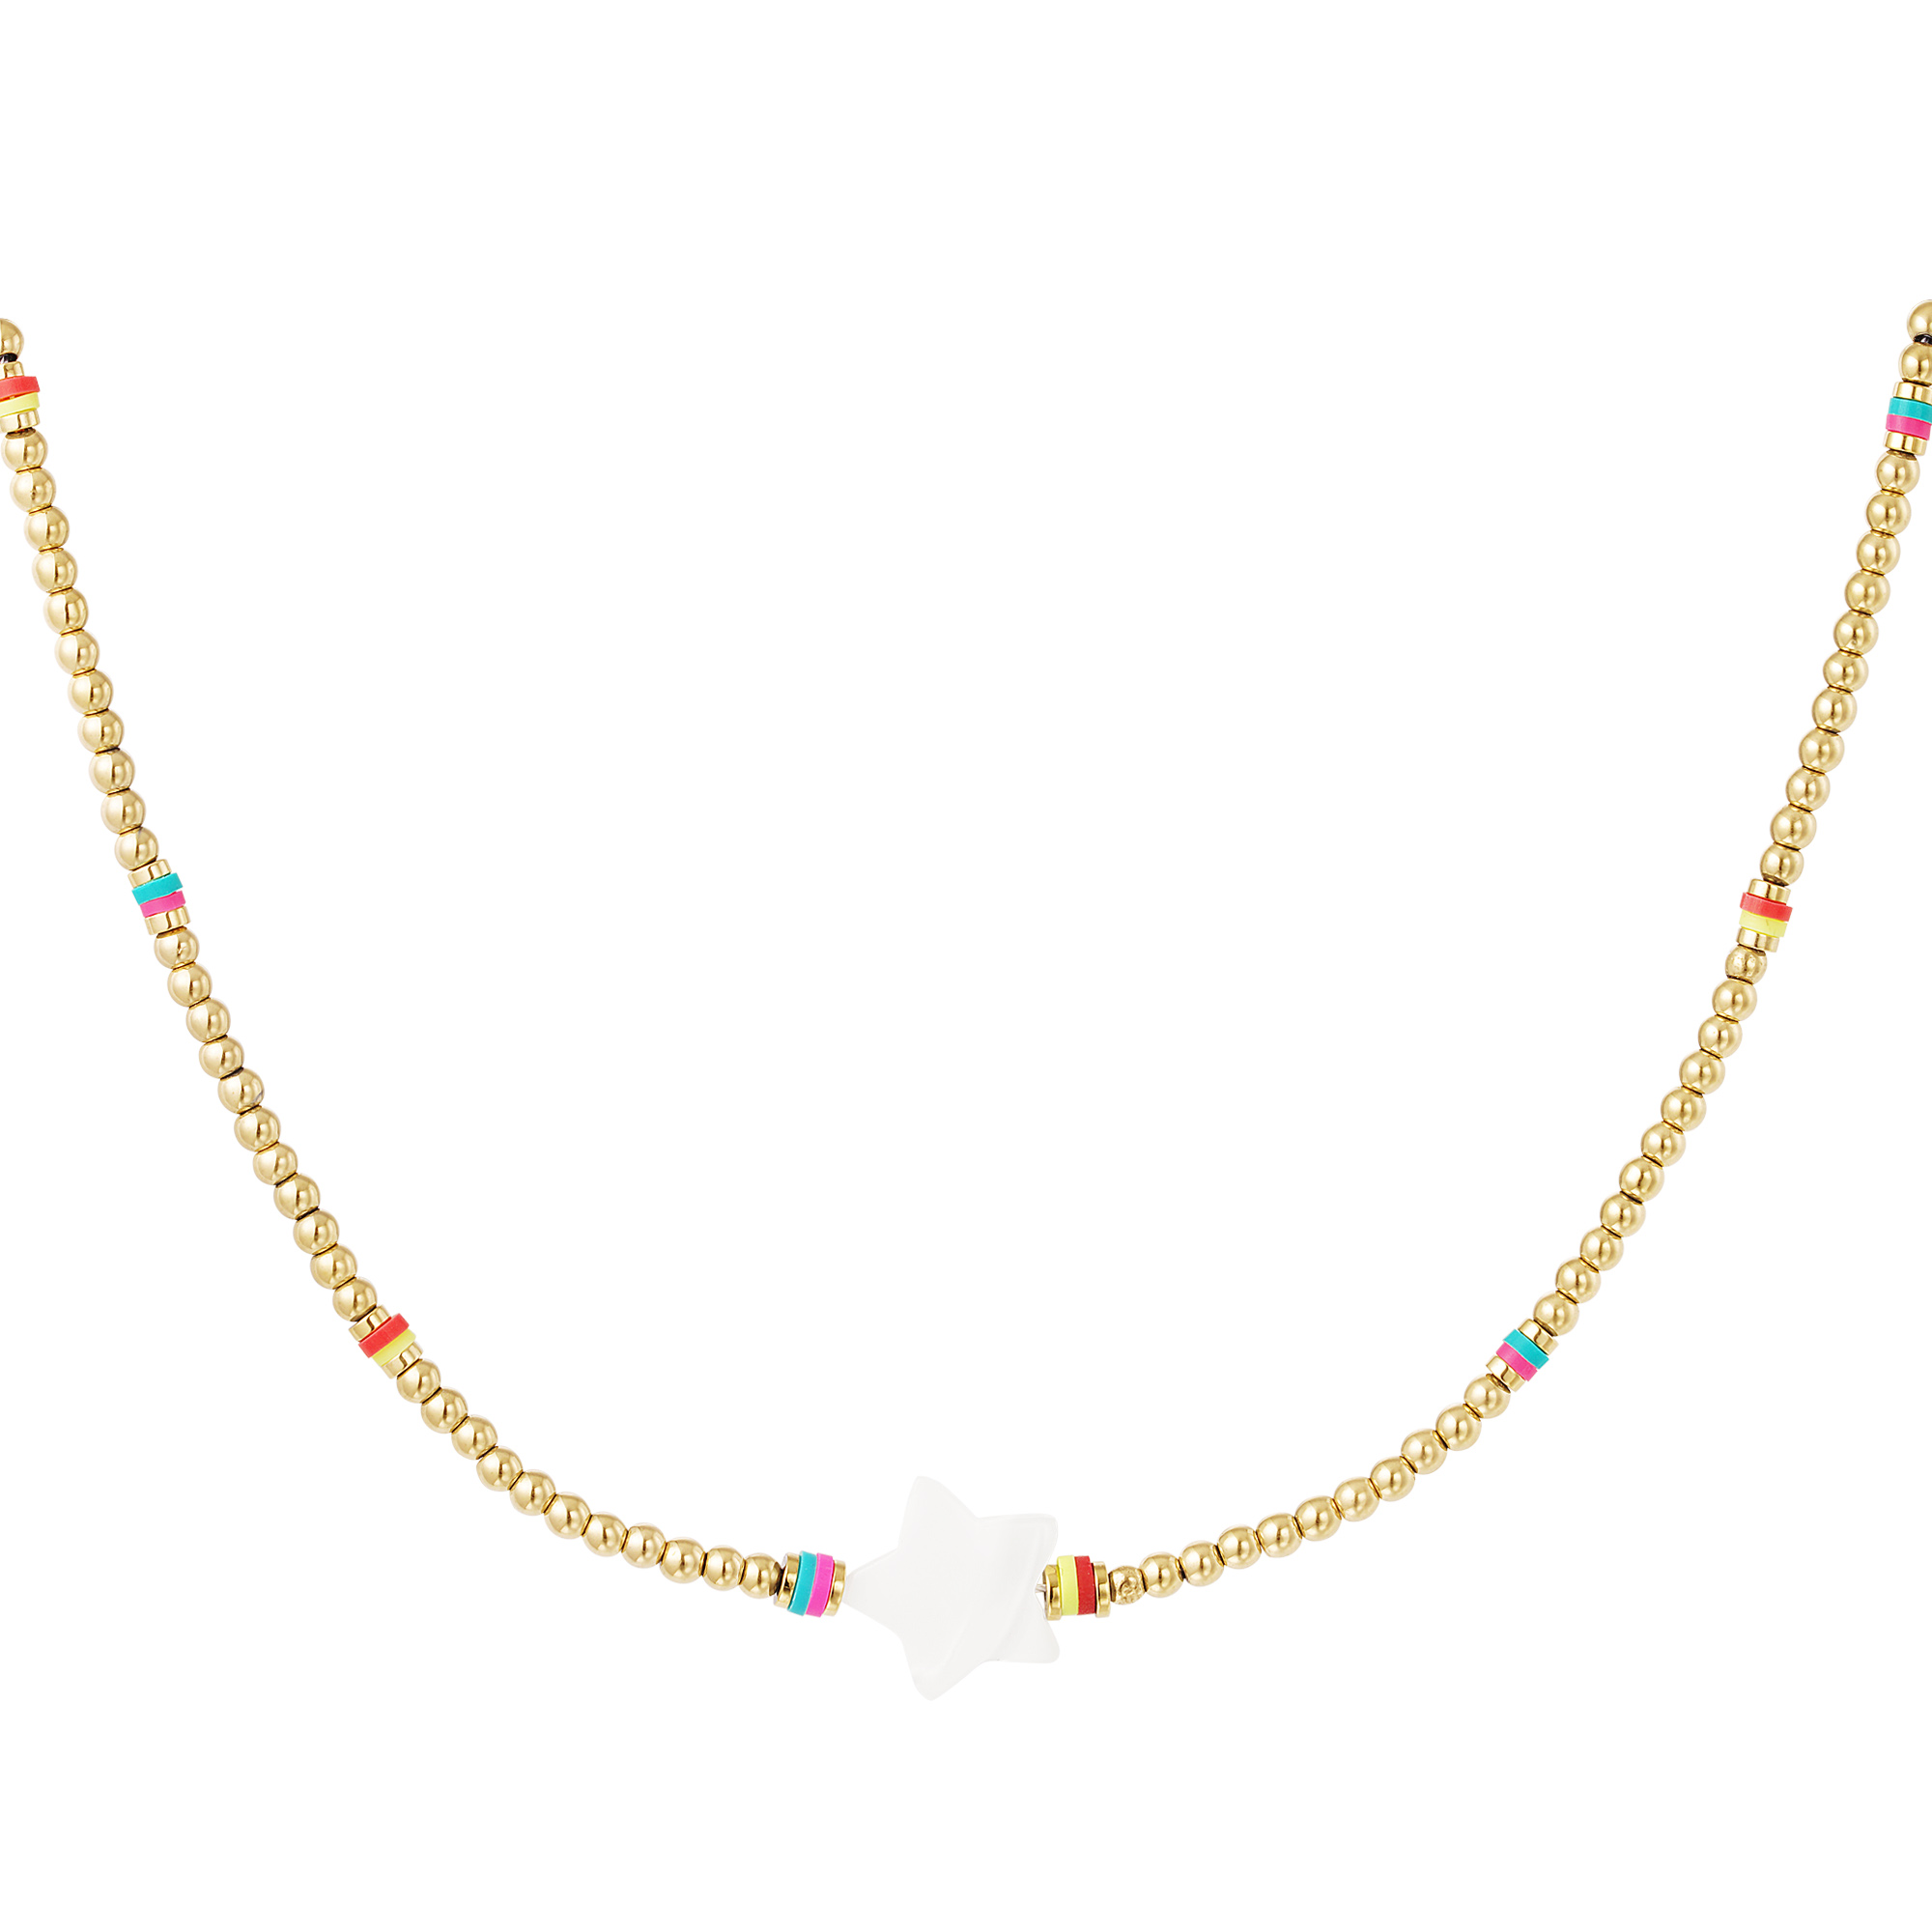 Beads & stars halskette - #summergirls-kollektion